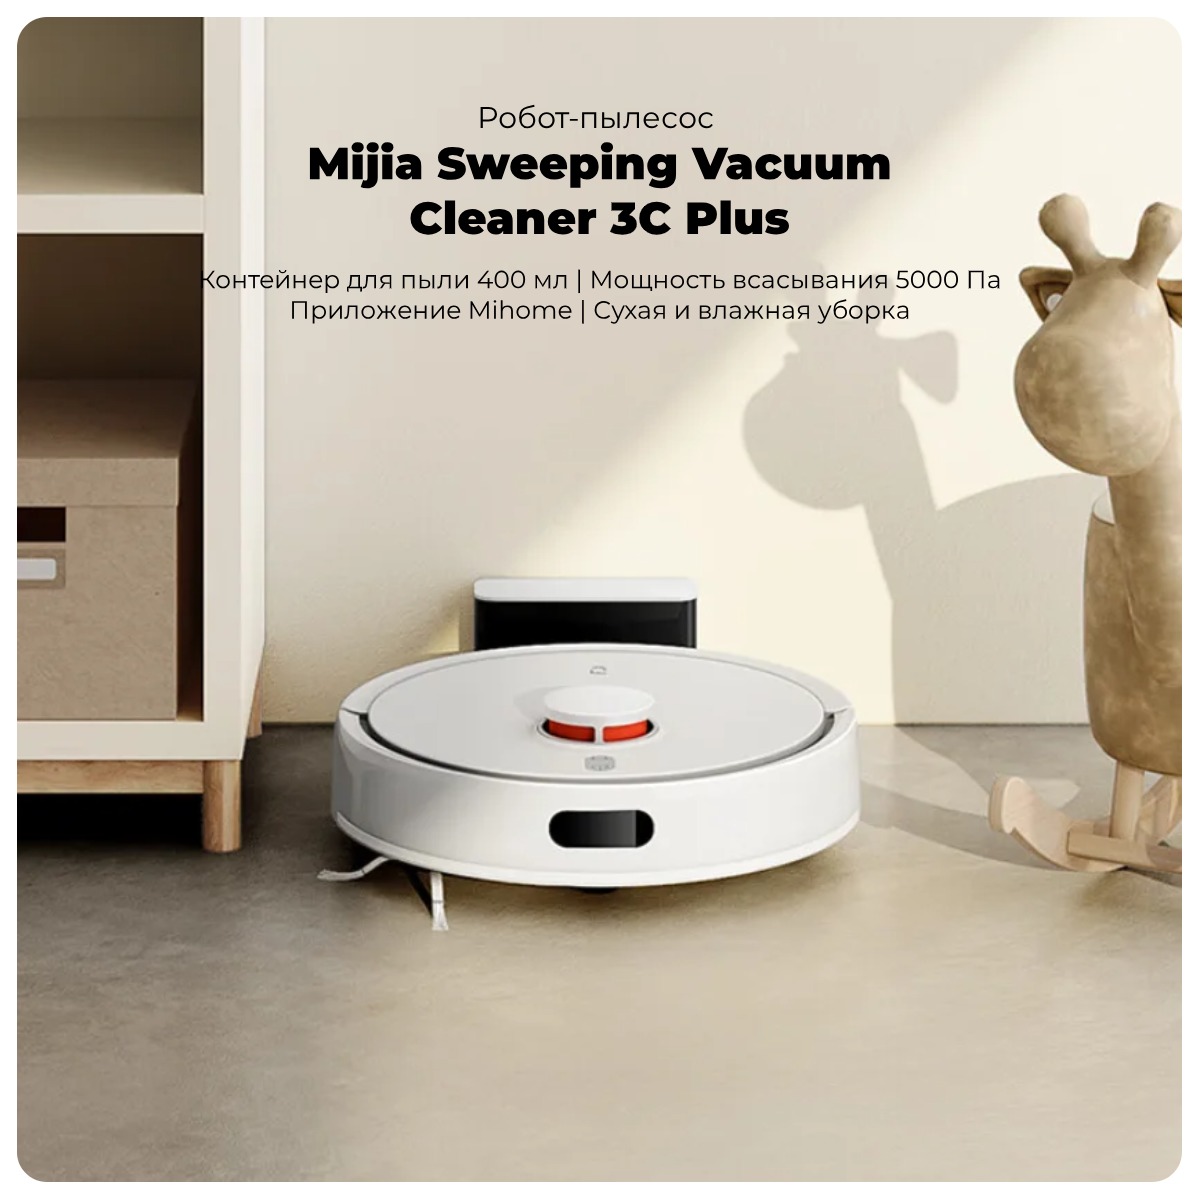 Mijia-Sweeping-Vacuum-Cleaner-3C-Plus-01